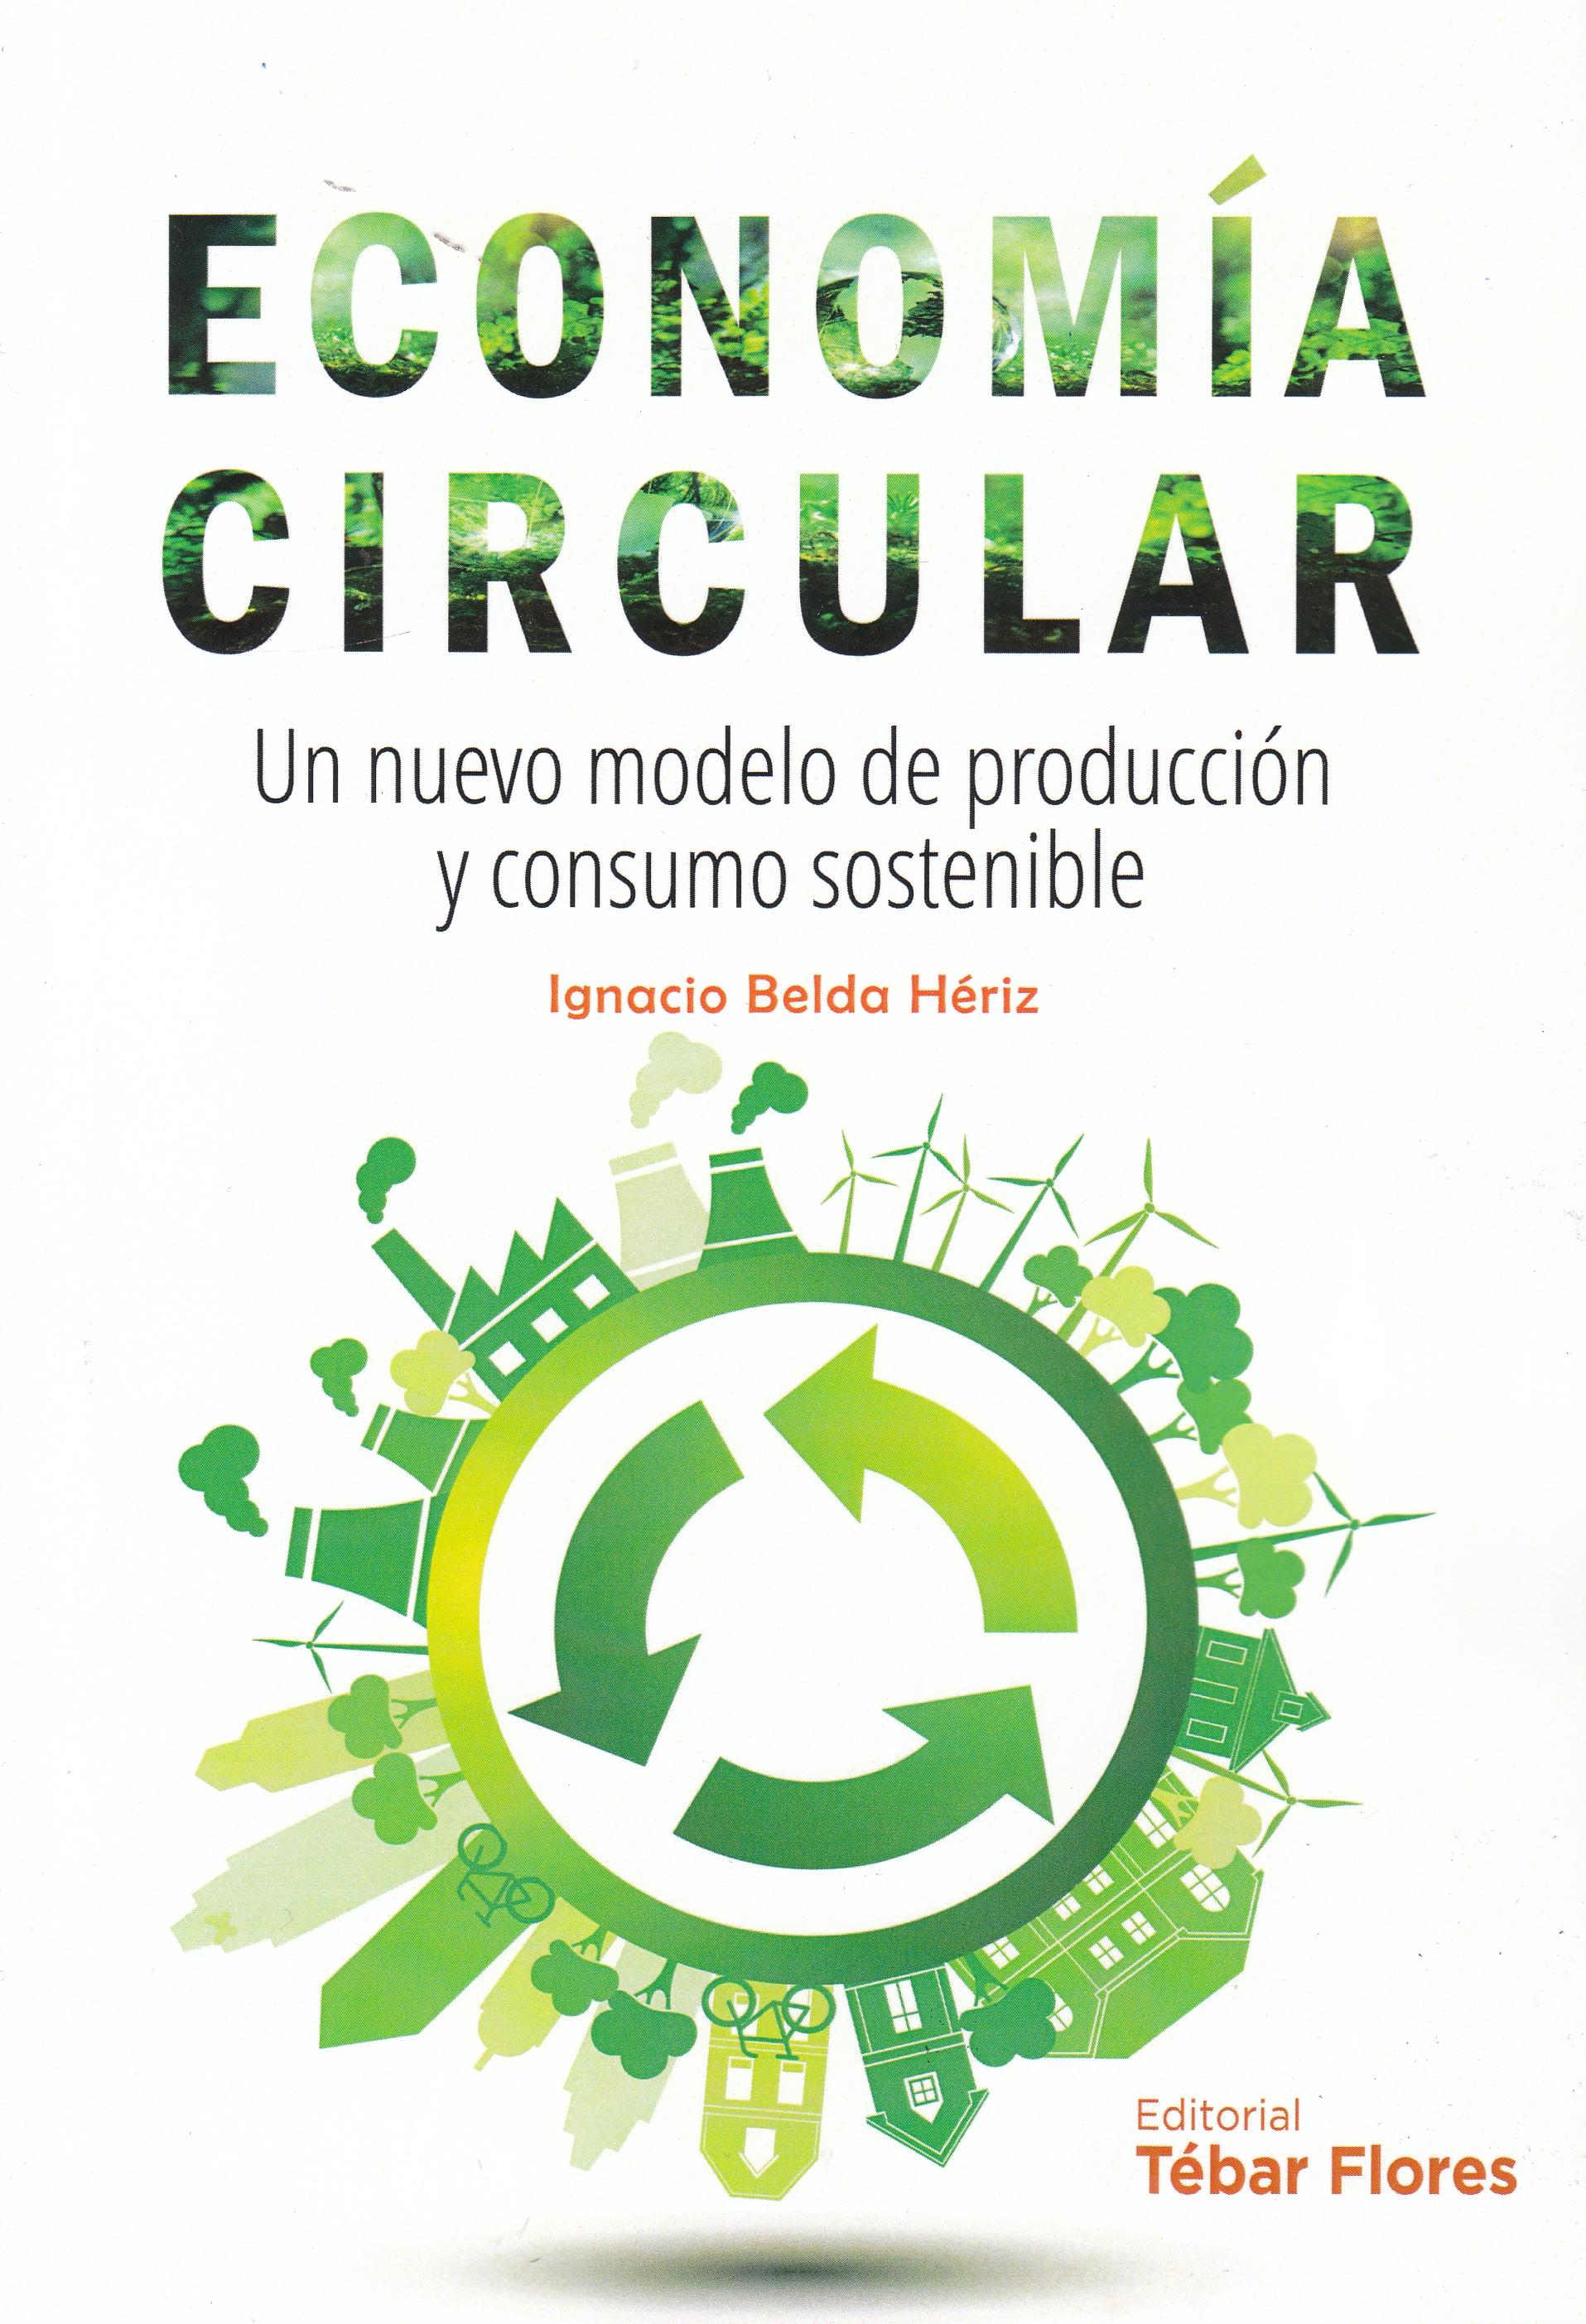 Economía circular "Un nuevo modelo de producción y consumo sostenible"